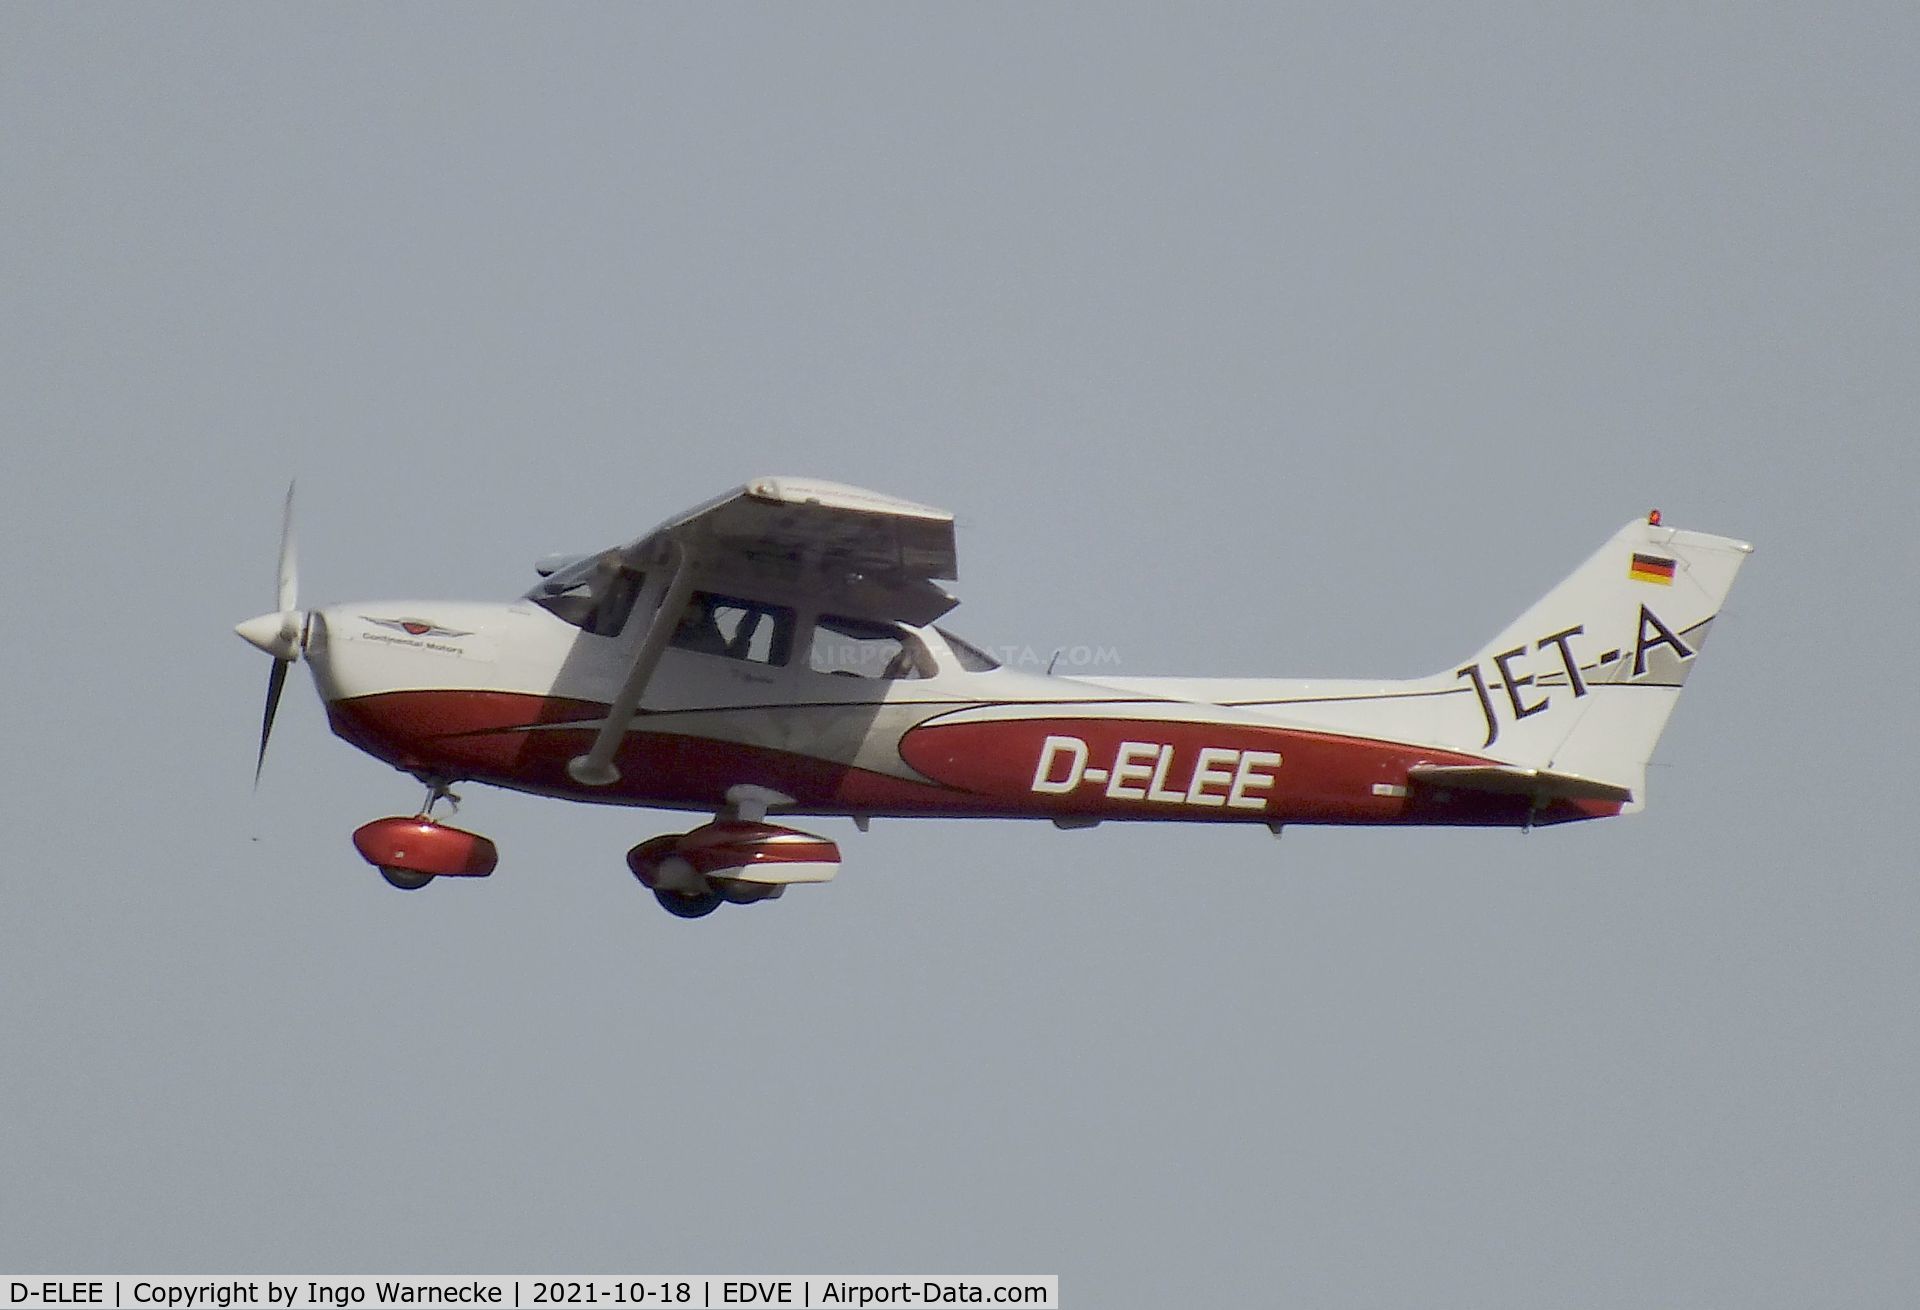 D-ELEE, 2005 Cessna 172S Skyhawk C/N 172S10099, Cessna 172S at Braunschweig-Wolfsburg airport, Waggum